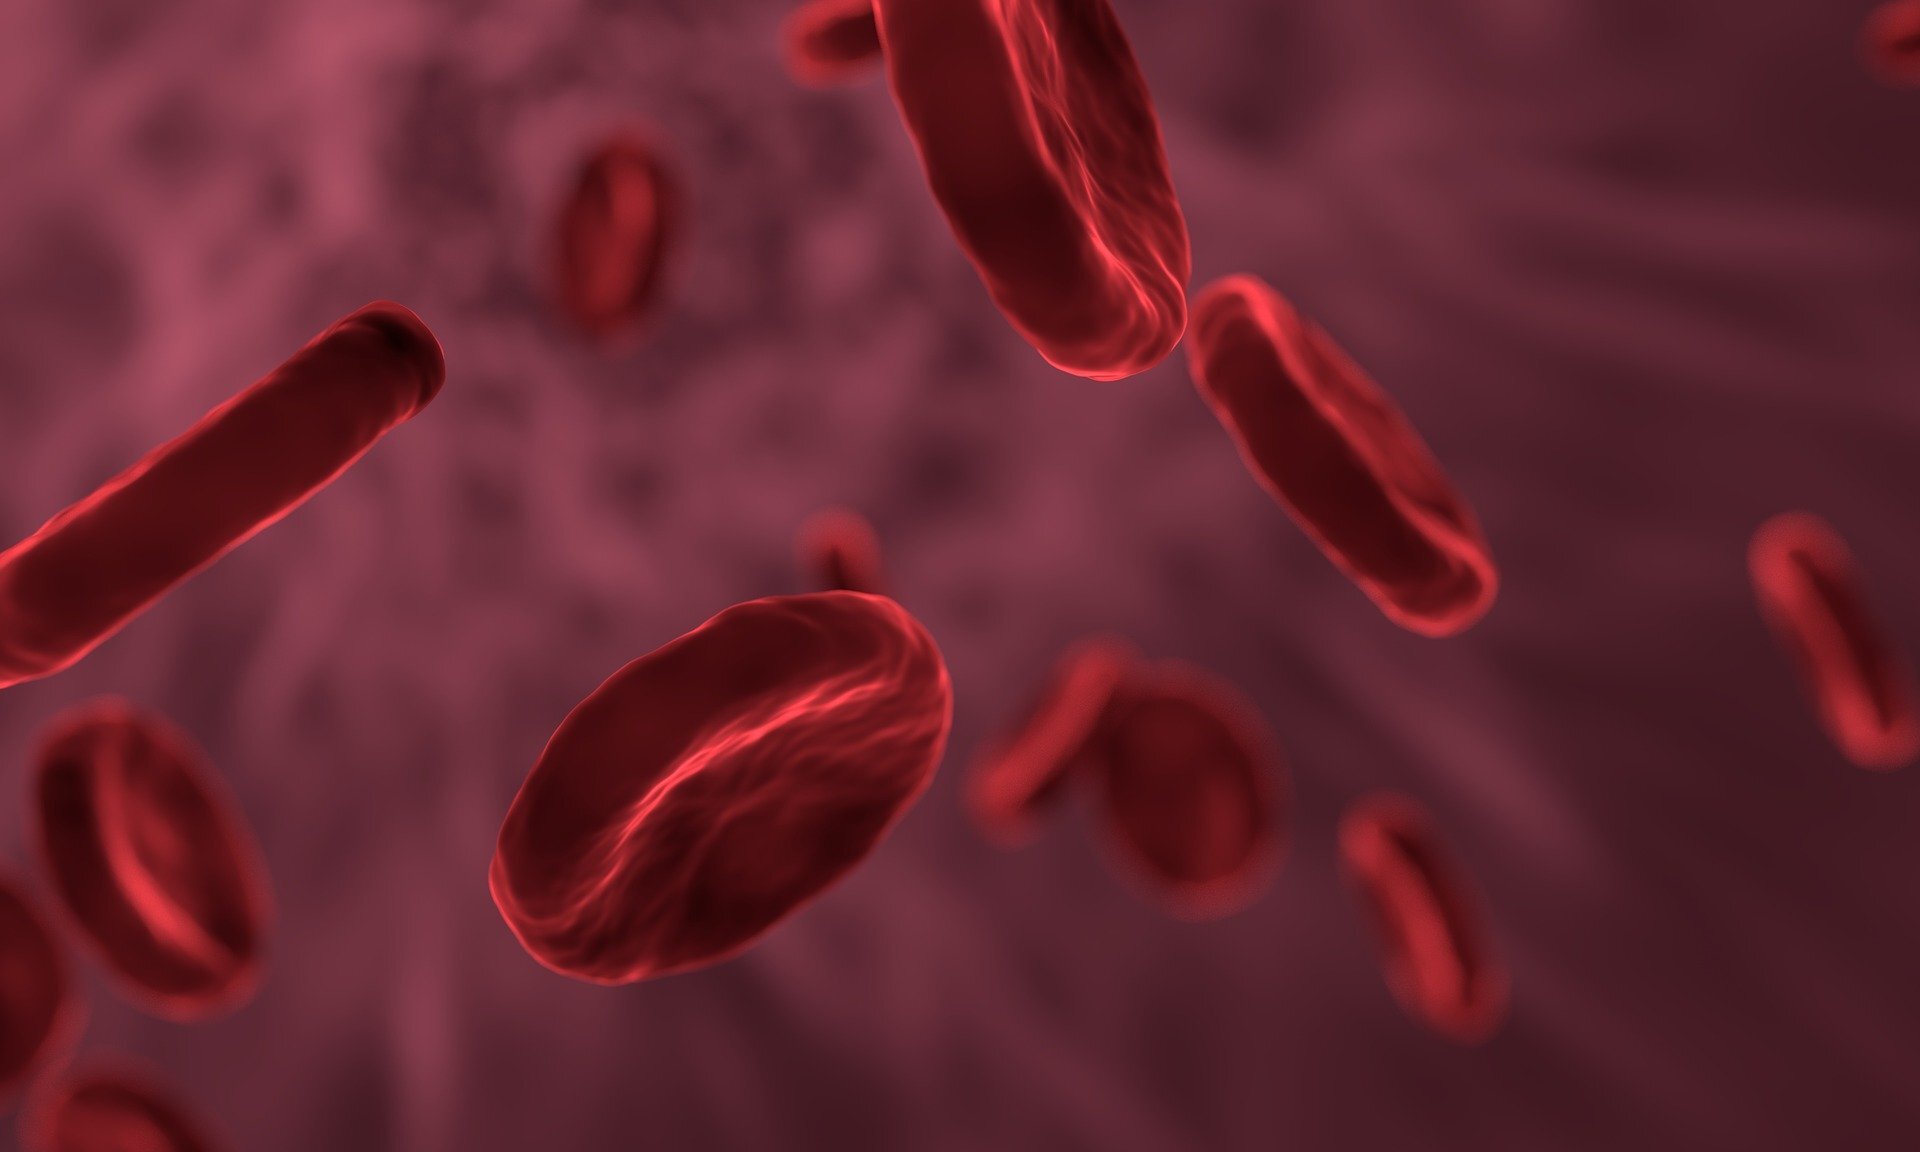 Grafika przedstawiająca erytrocyty w krwiobiegu. Komórki te mają kształt dwuwklęsłych dysków koloru krwistoczerwonego.